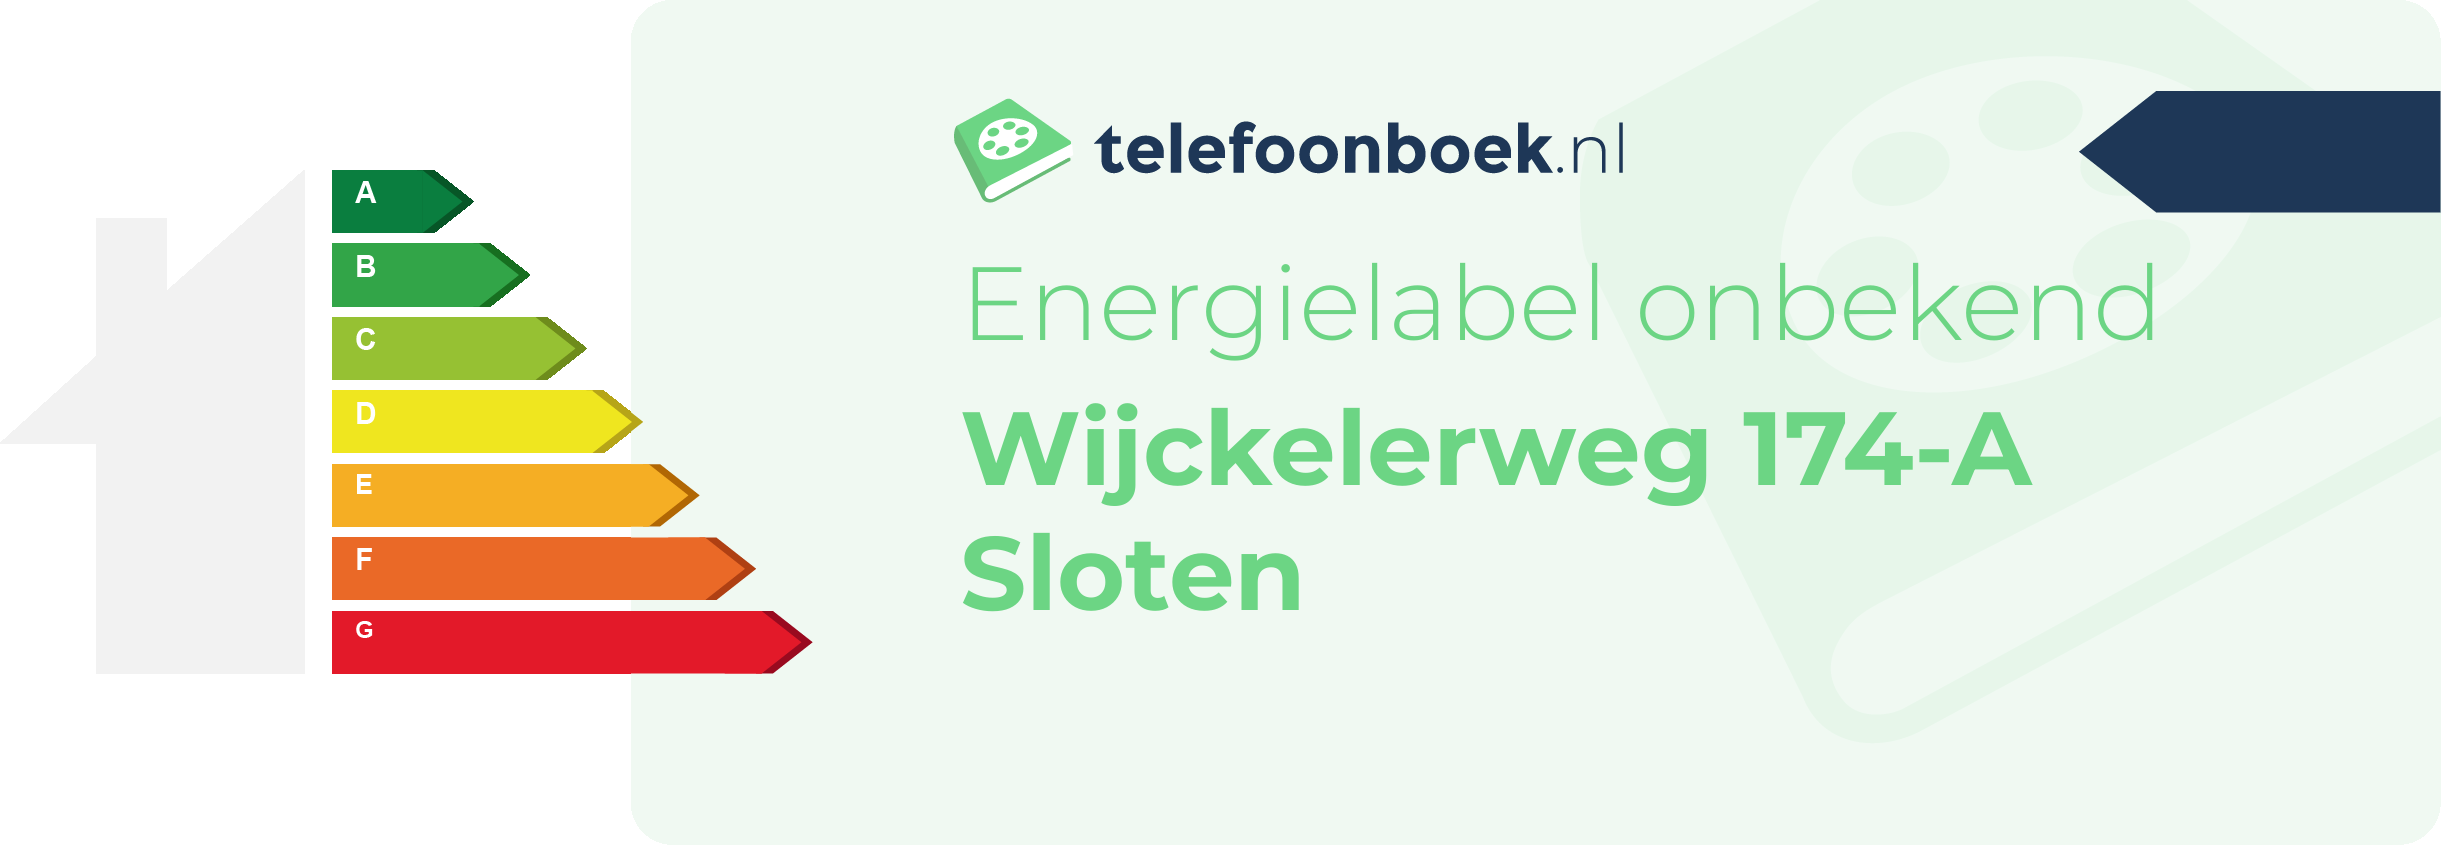 Energielabel Wijckelerweg 174-A Sloten